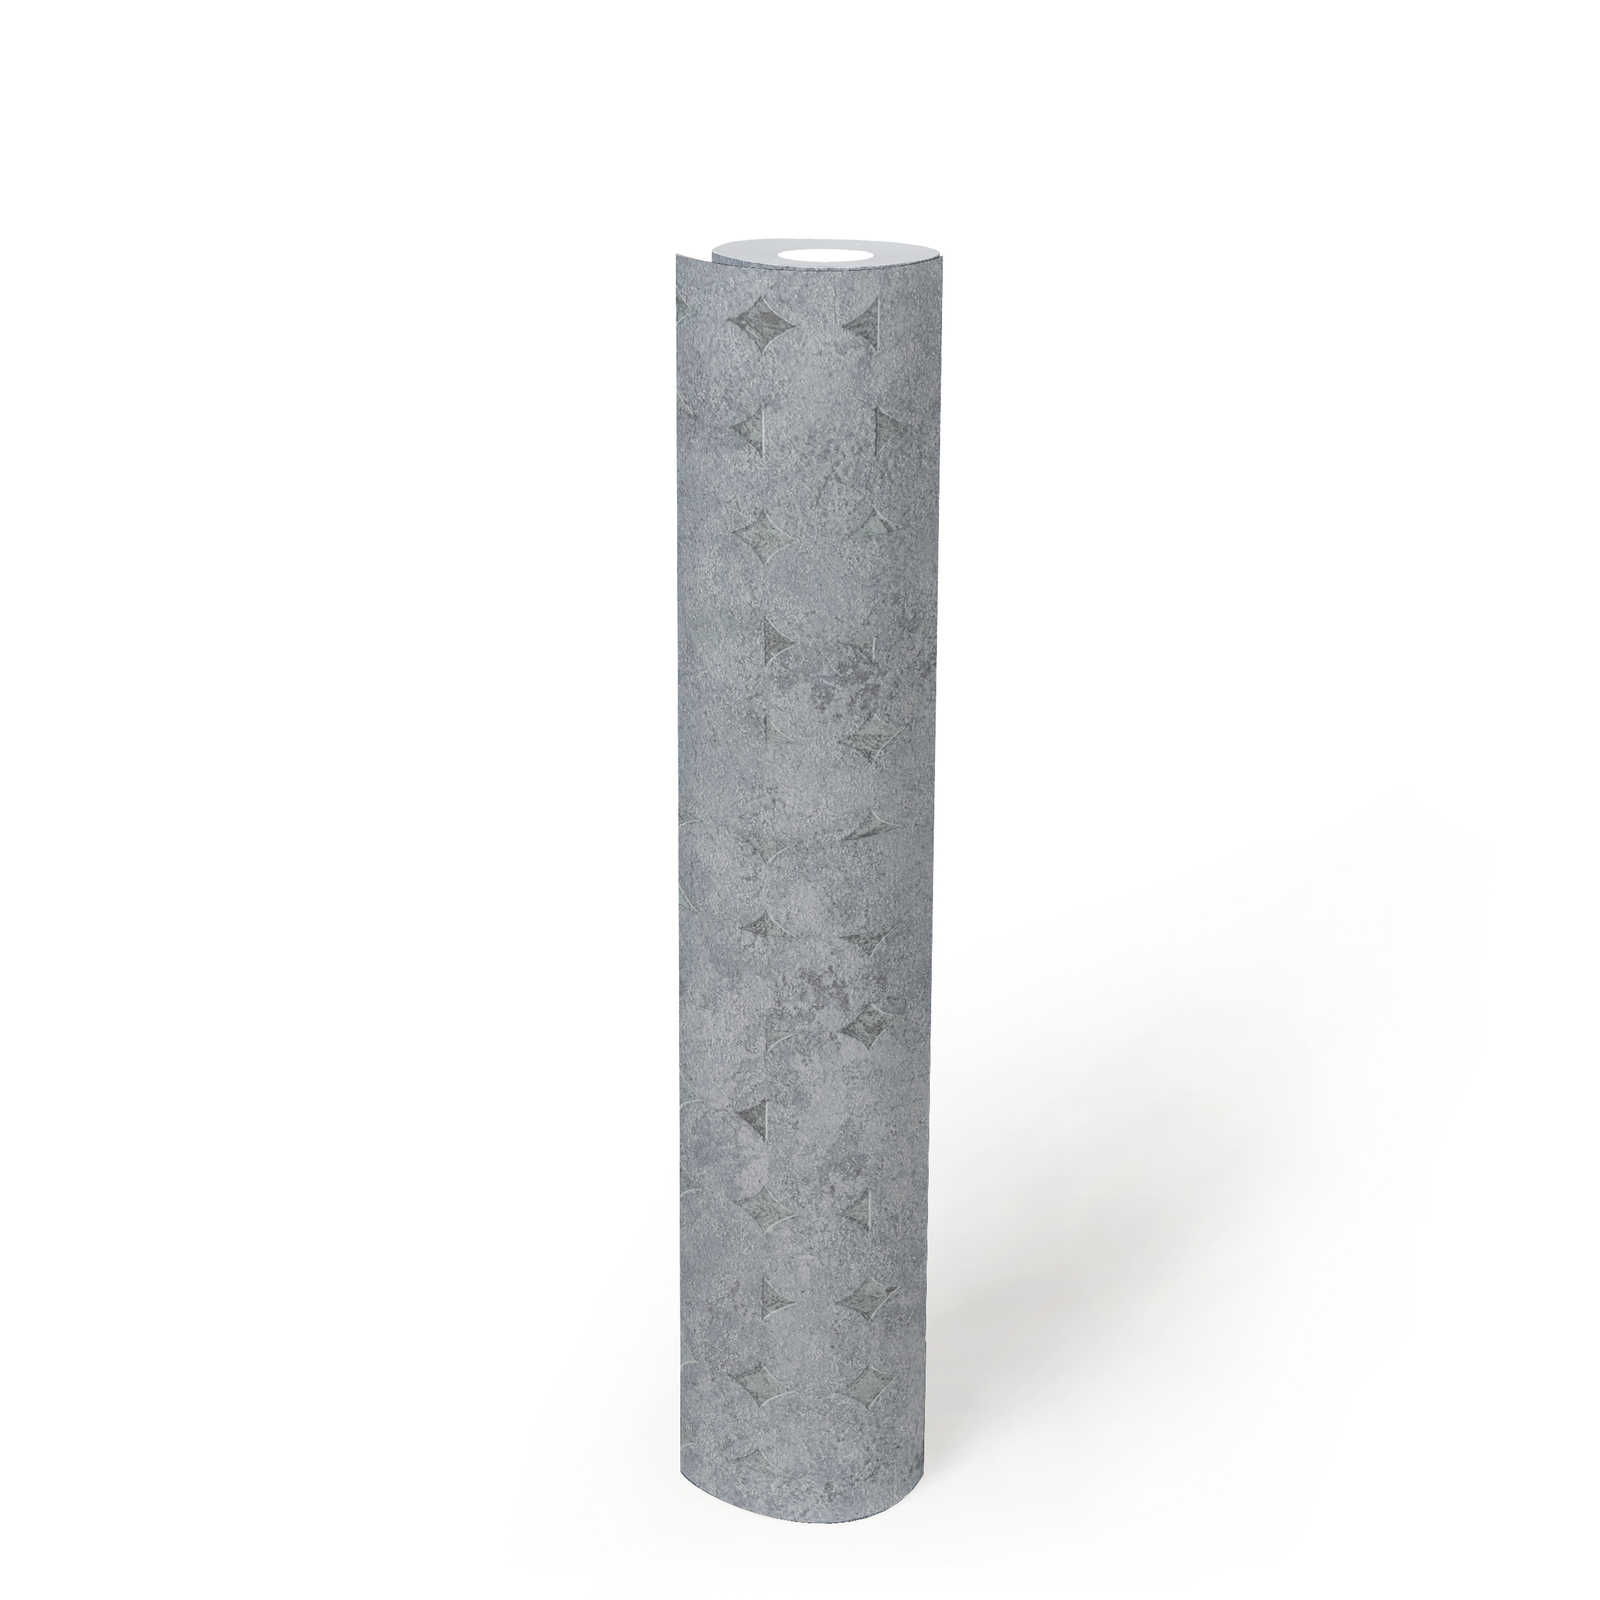             papier peint en papier intissé uni avec structure et motif rugueux - gris, argenté
        